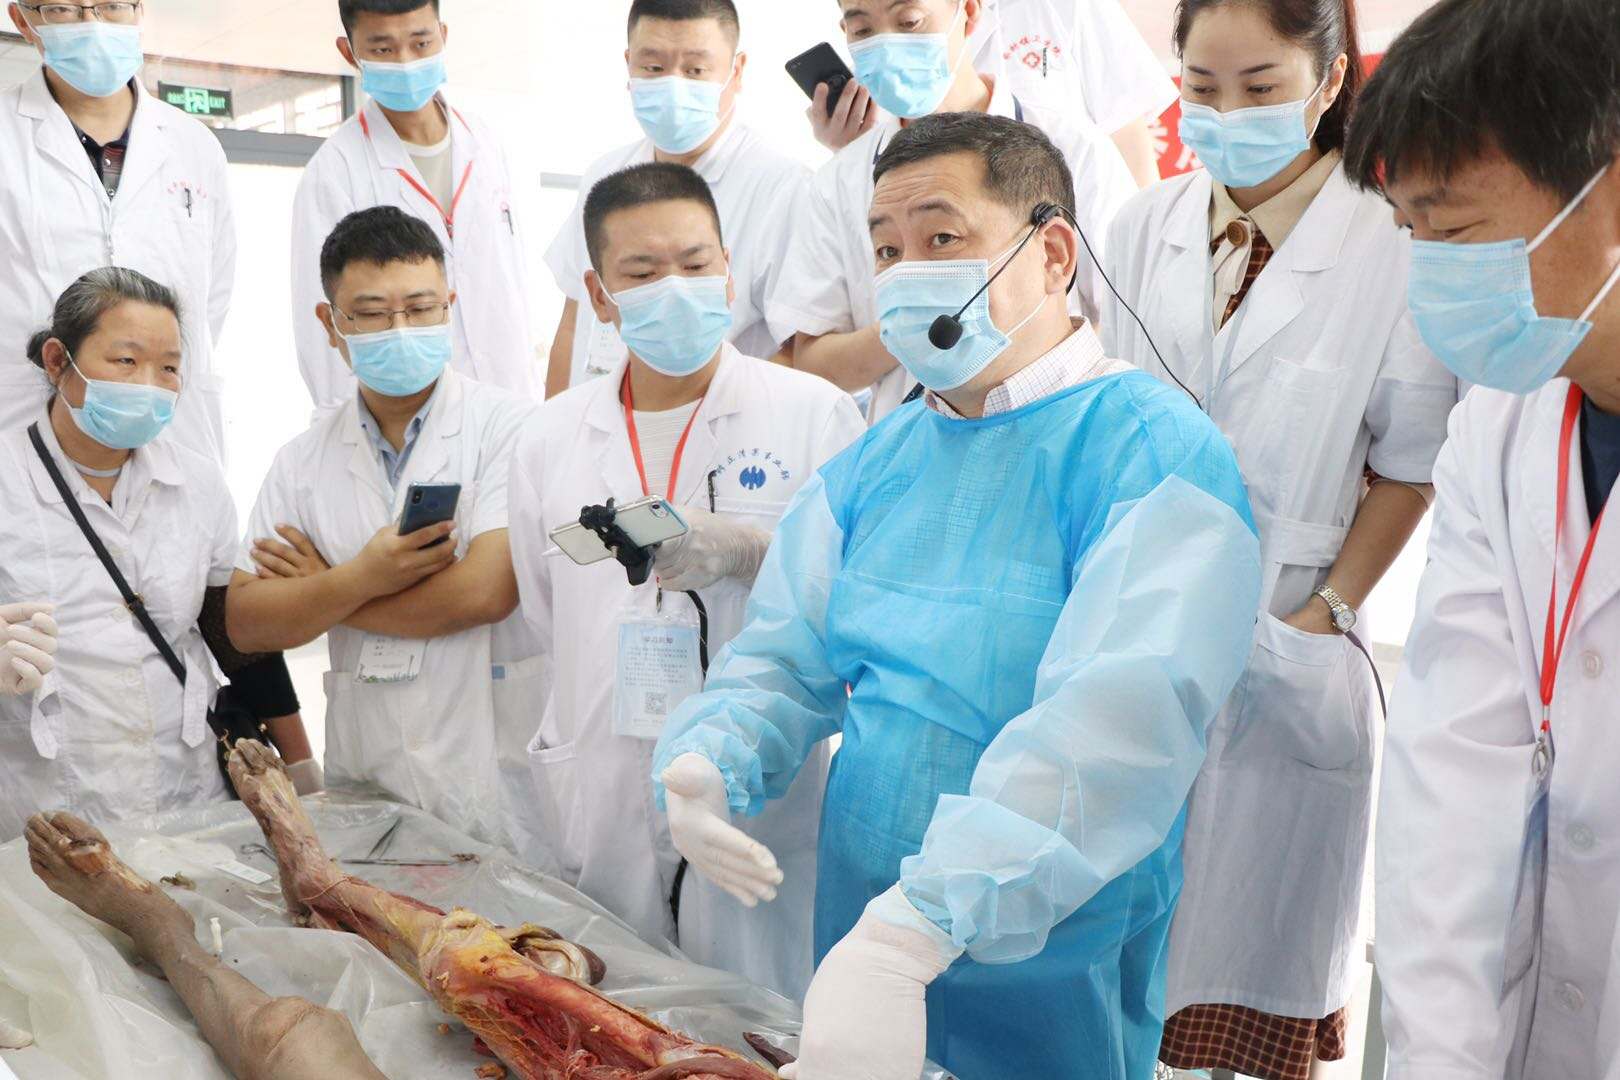 针刀新鲜人体解剖及临床实战班3月15日 在郑州开课